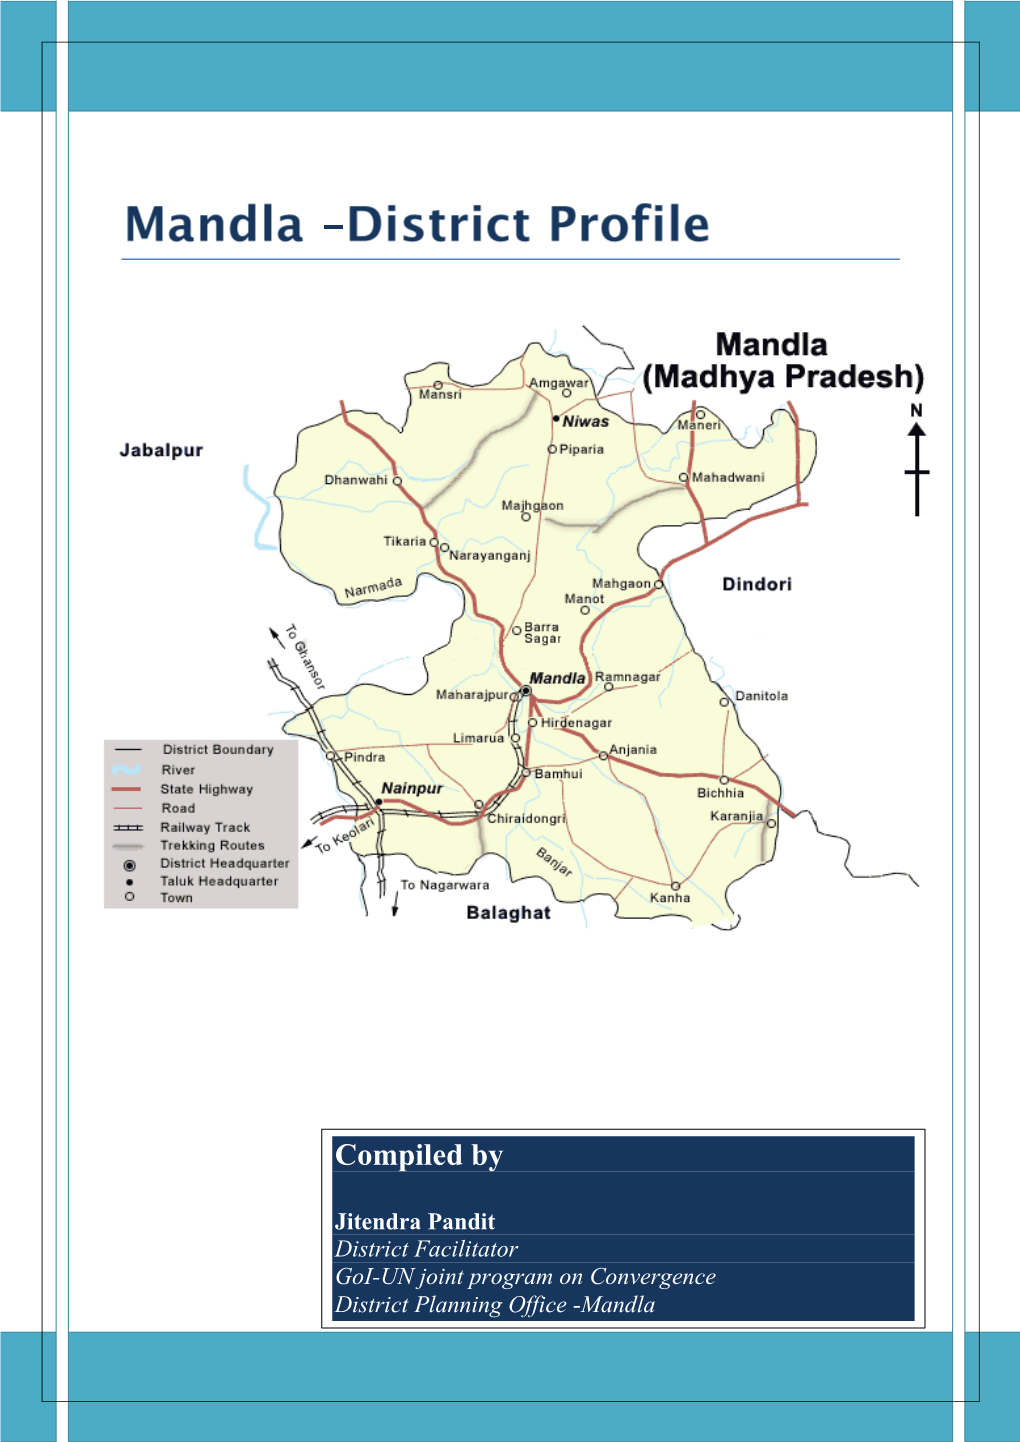 District Profile